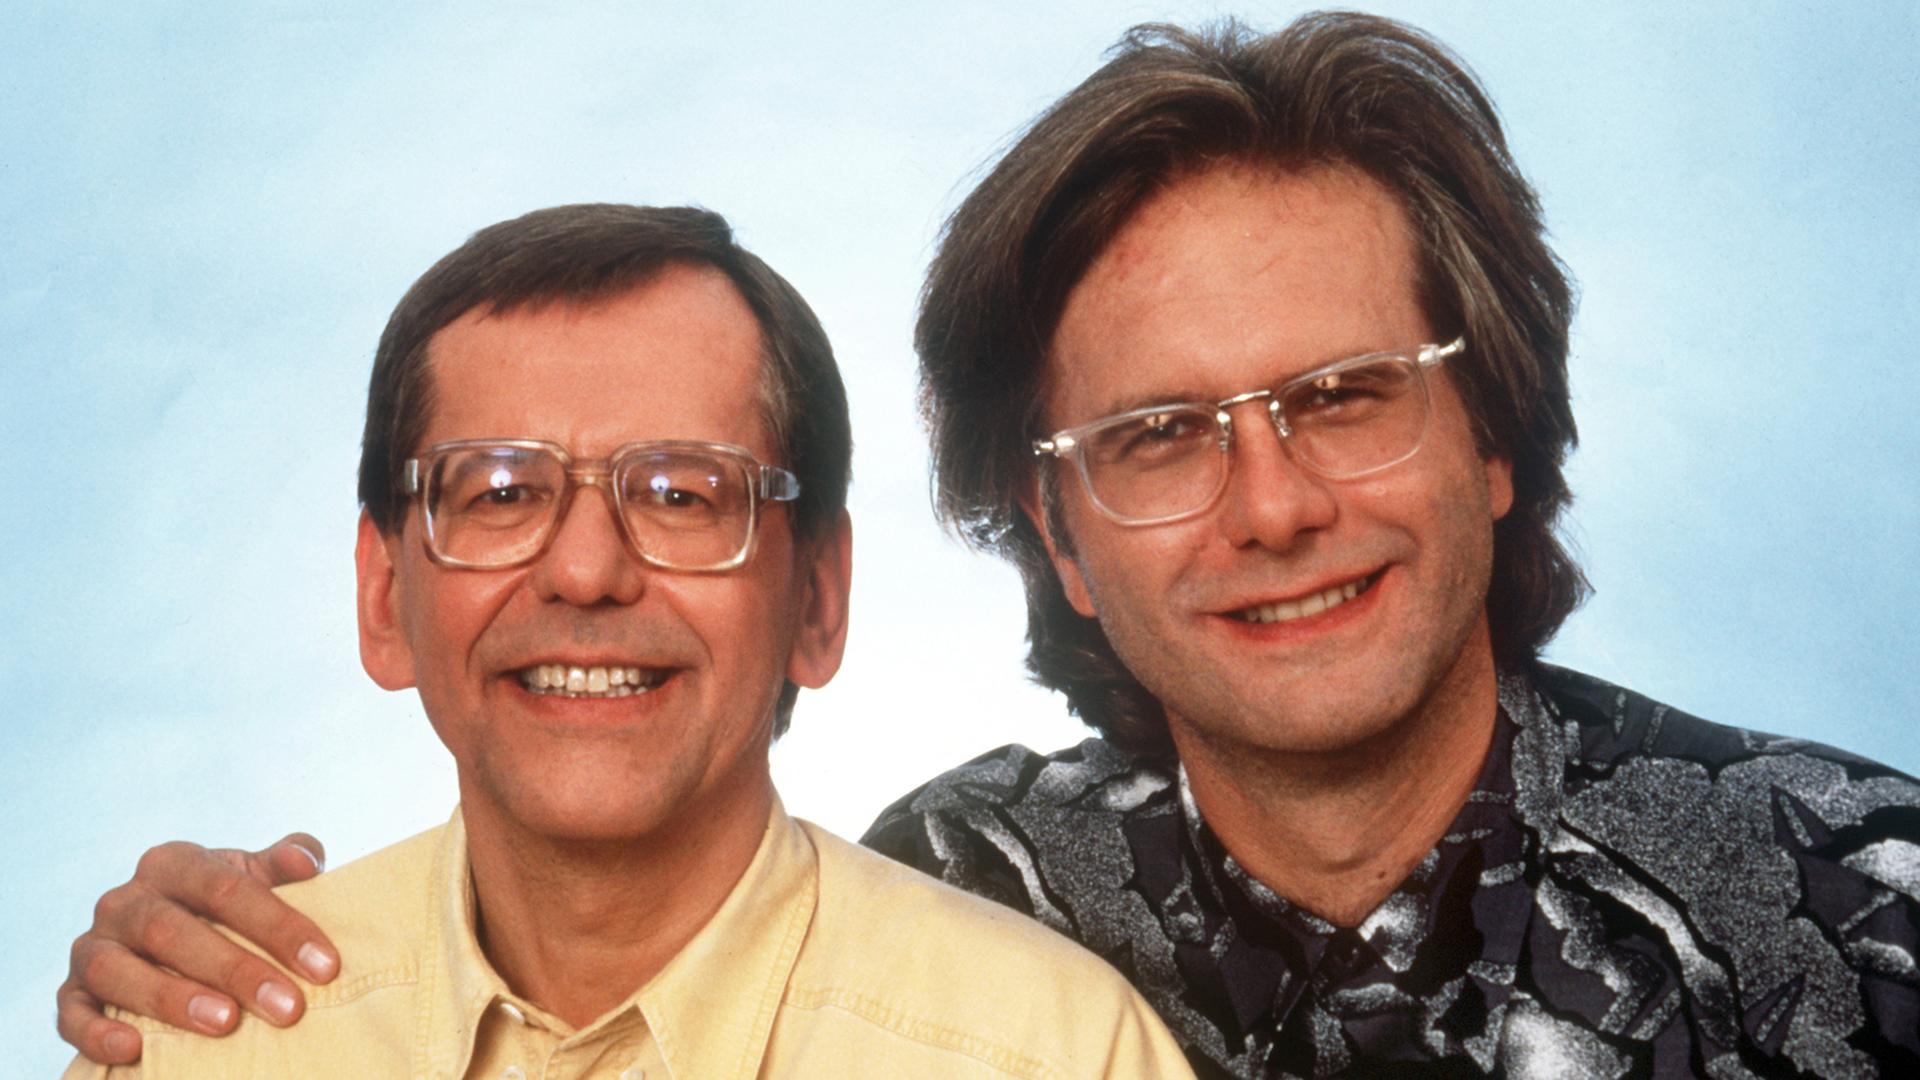 Harald Schmidt und Herbert Feuerstein (links), die beiden deutschen Fernsehmoderatoren, Entertainer und Kabarettisten ("Schmidteinander"), aufgenommen im August 1992 in Köln.